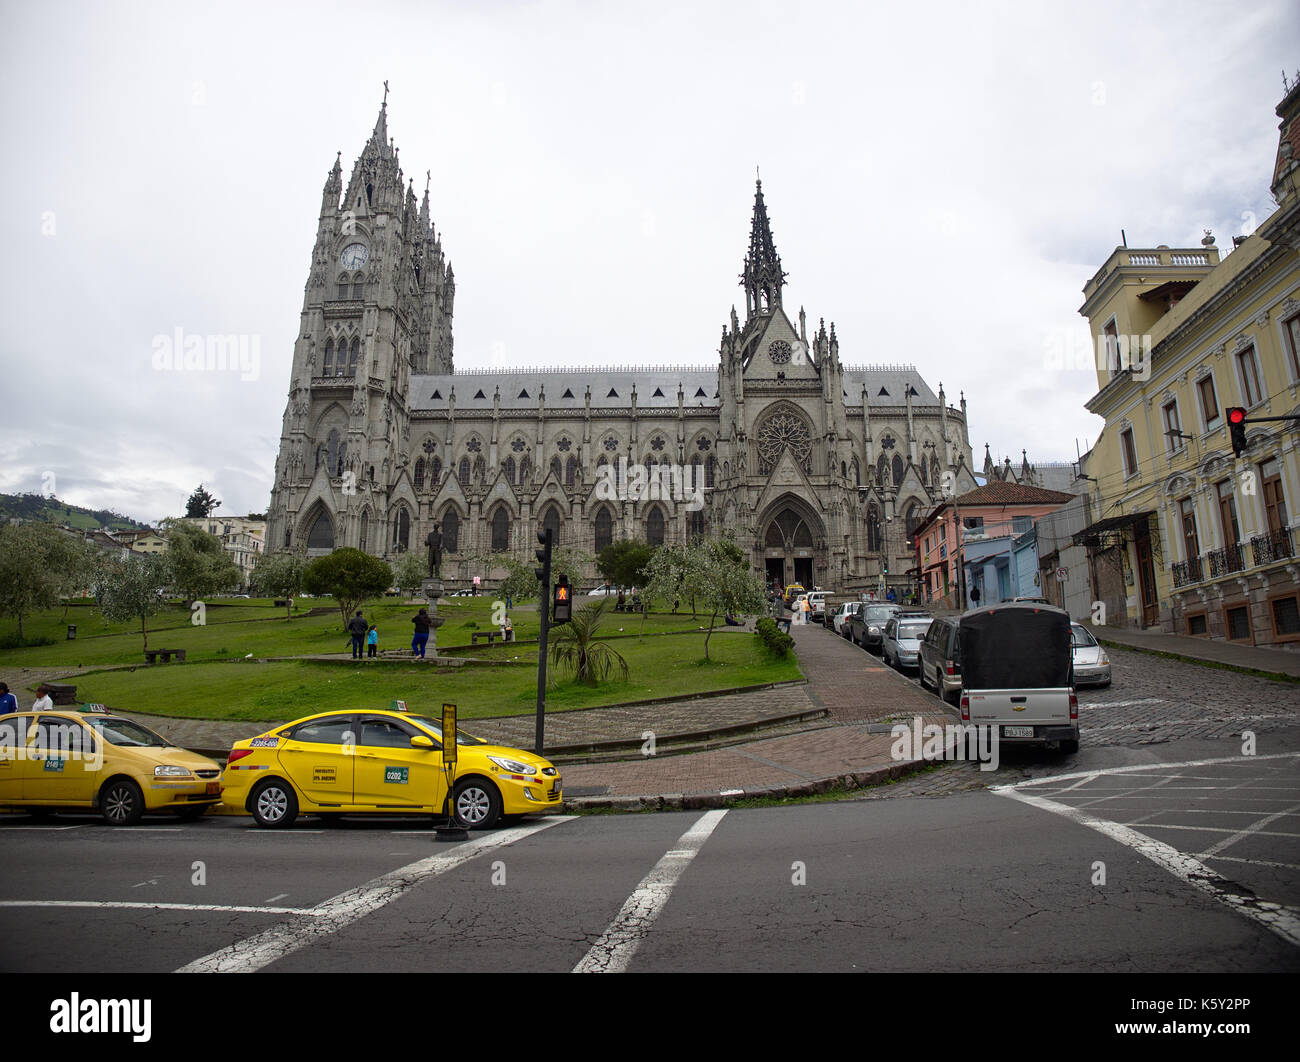 Quito, Ecuador - 2017: La Basilica del voto Nazionale (Basílica del Vito Nacional) è una chiesa cattolica romana situata nel centro storico. Foto Stock